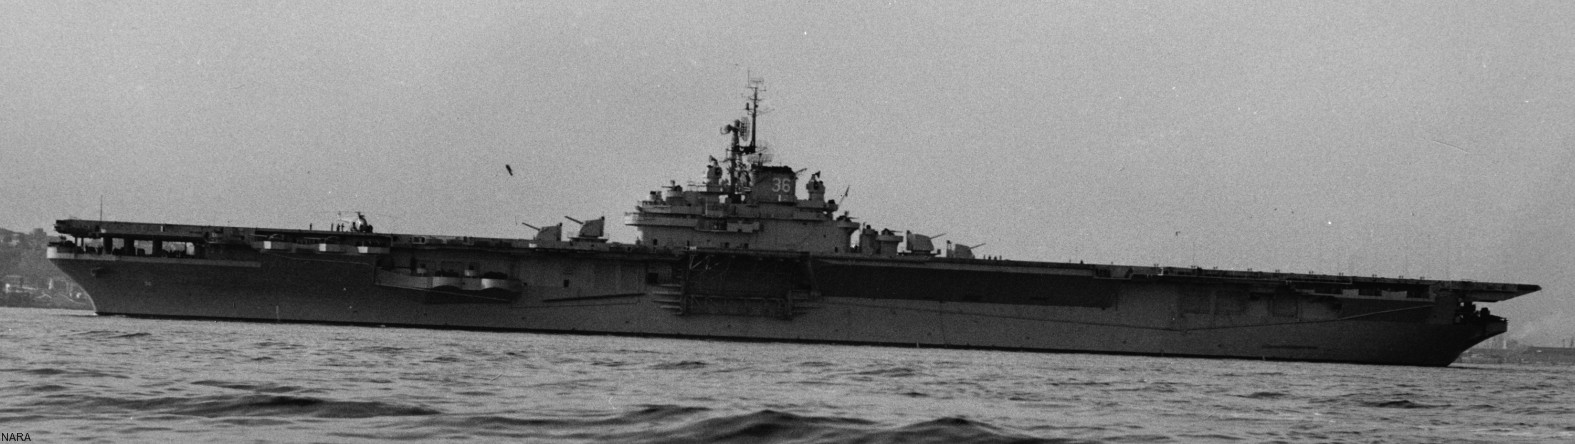 cva-36 uss antietam essex class aircraft carrier us navy 08